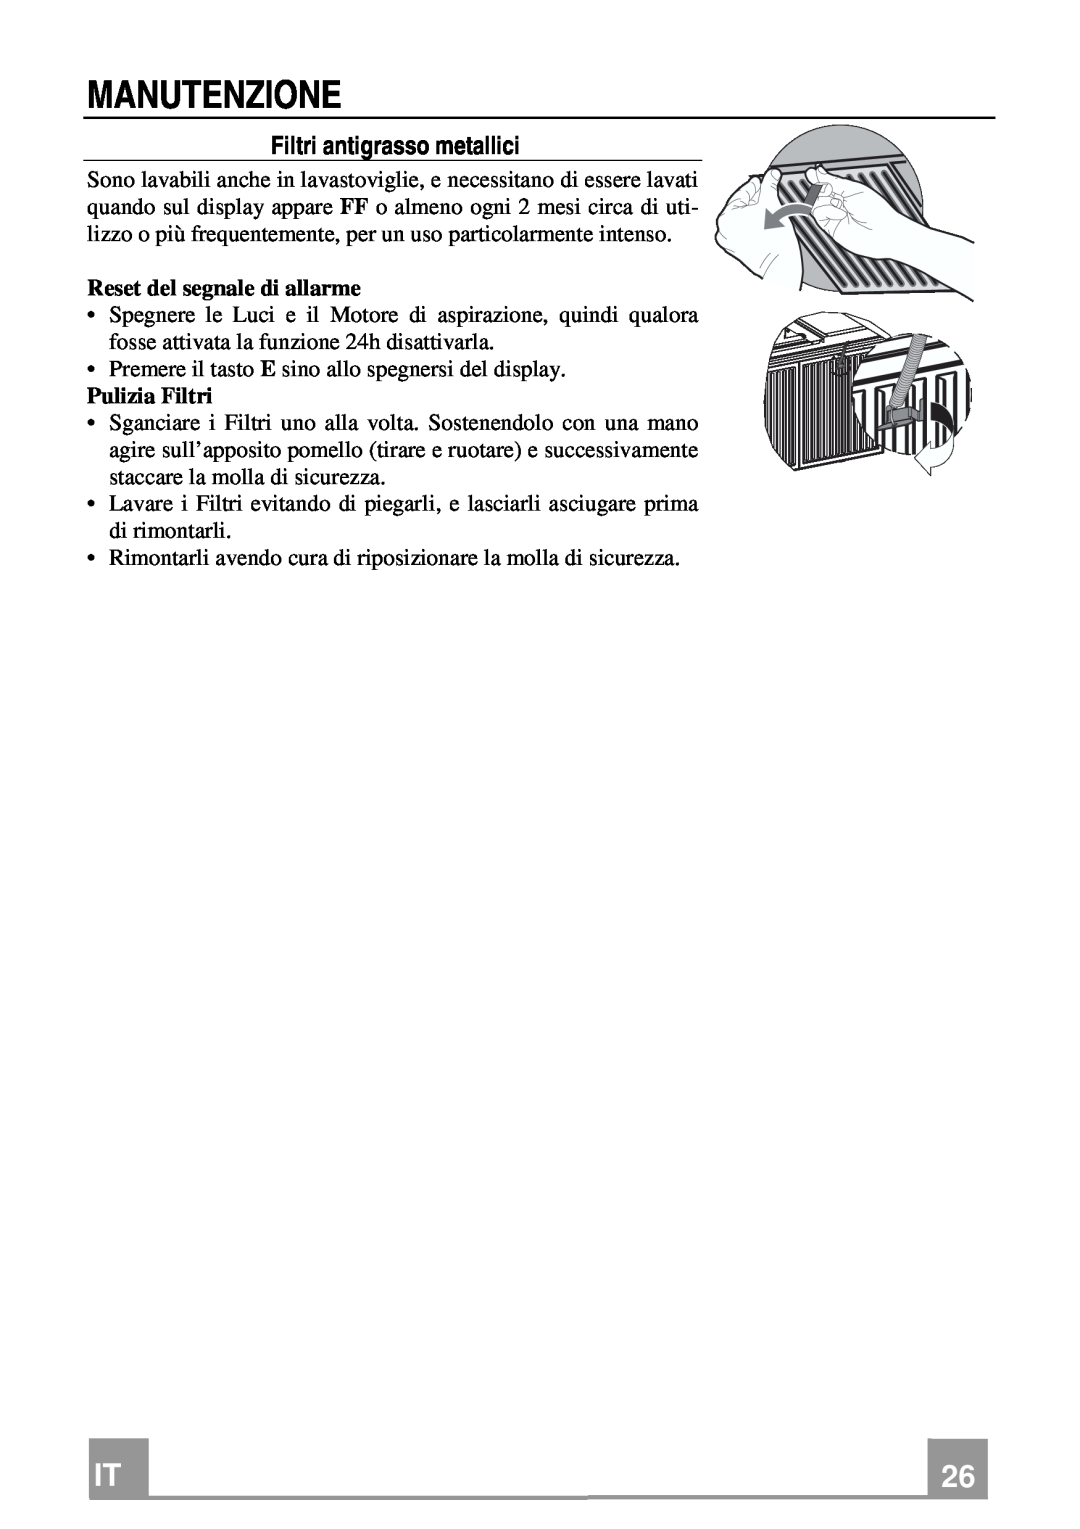 Franke Consumer Products FDMO 607 I manual Manutenzione, Filtri antigrasso metallici, Reset del segnale di allarme 